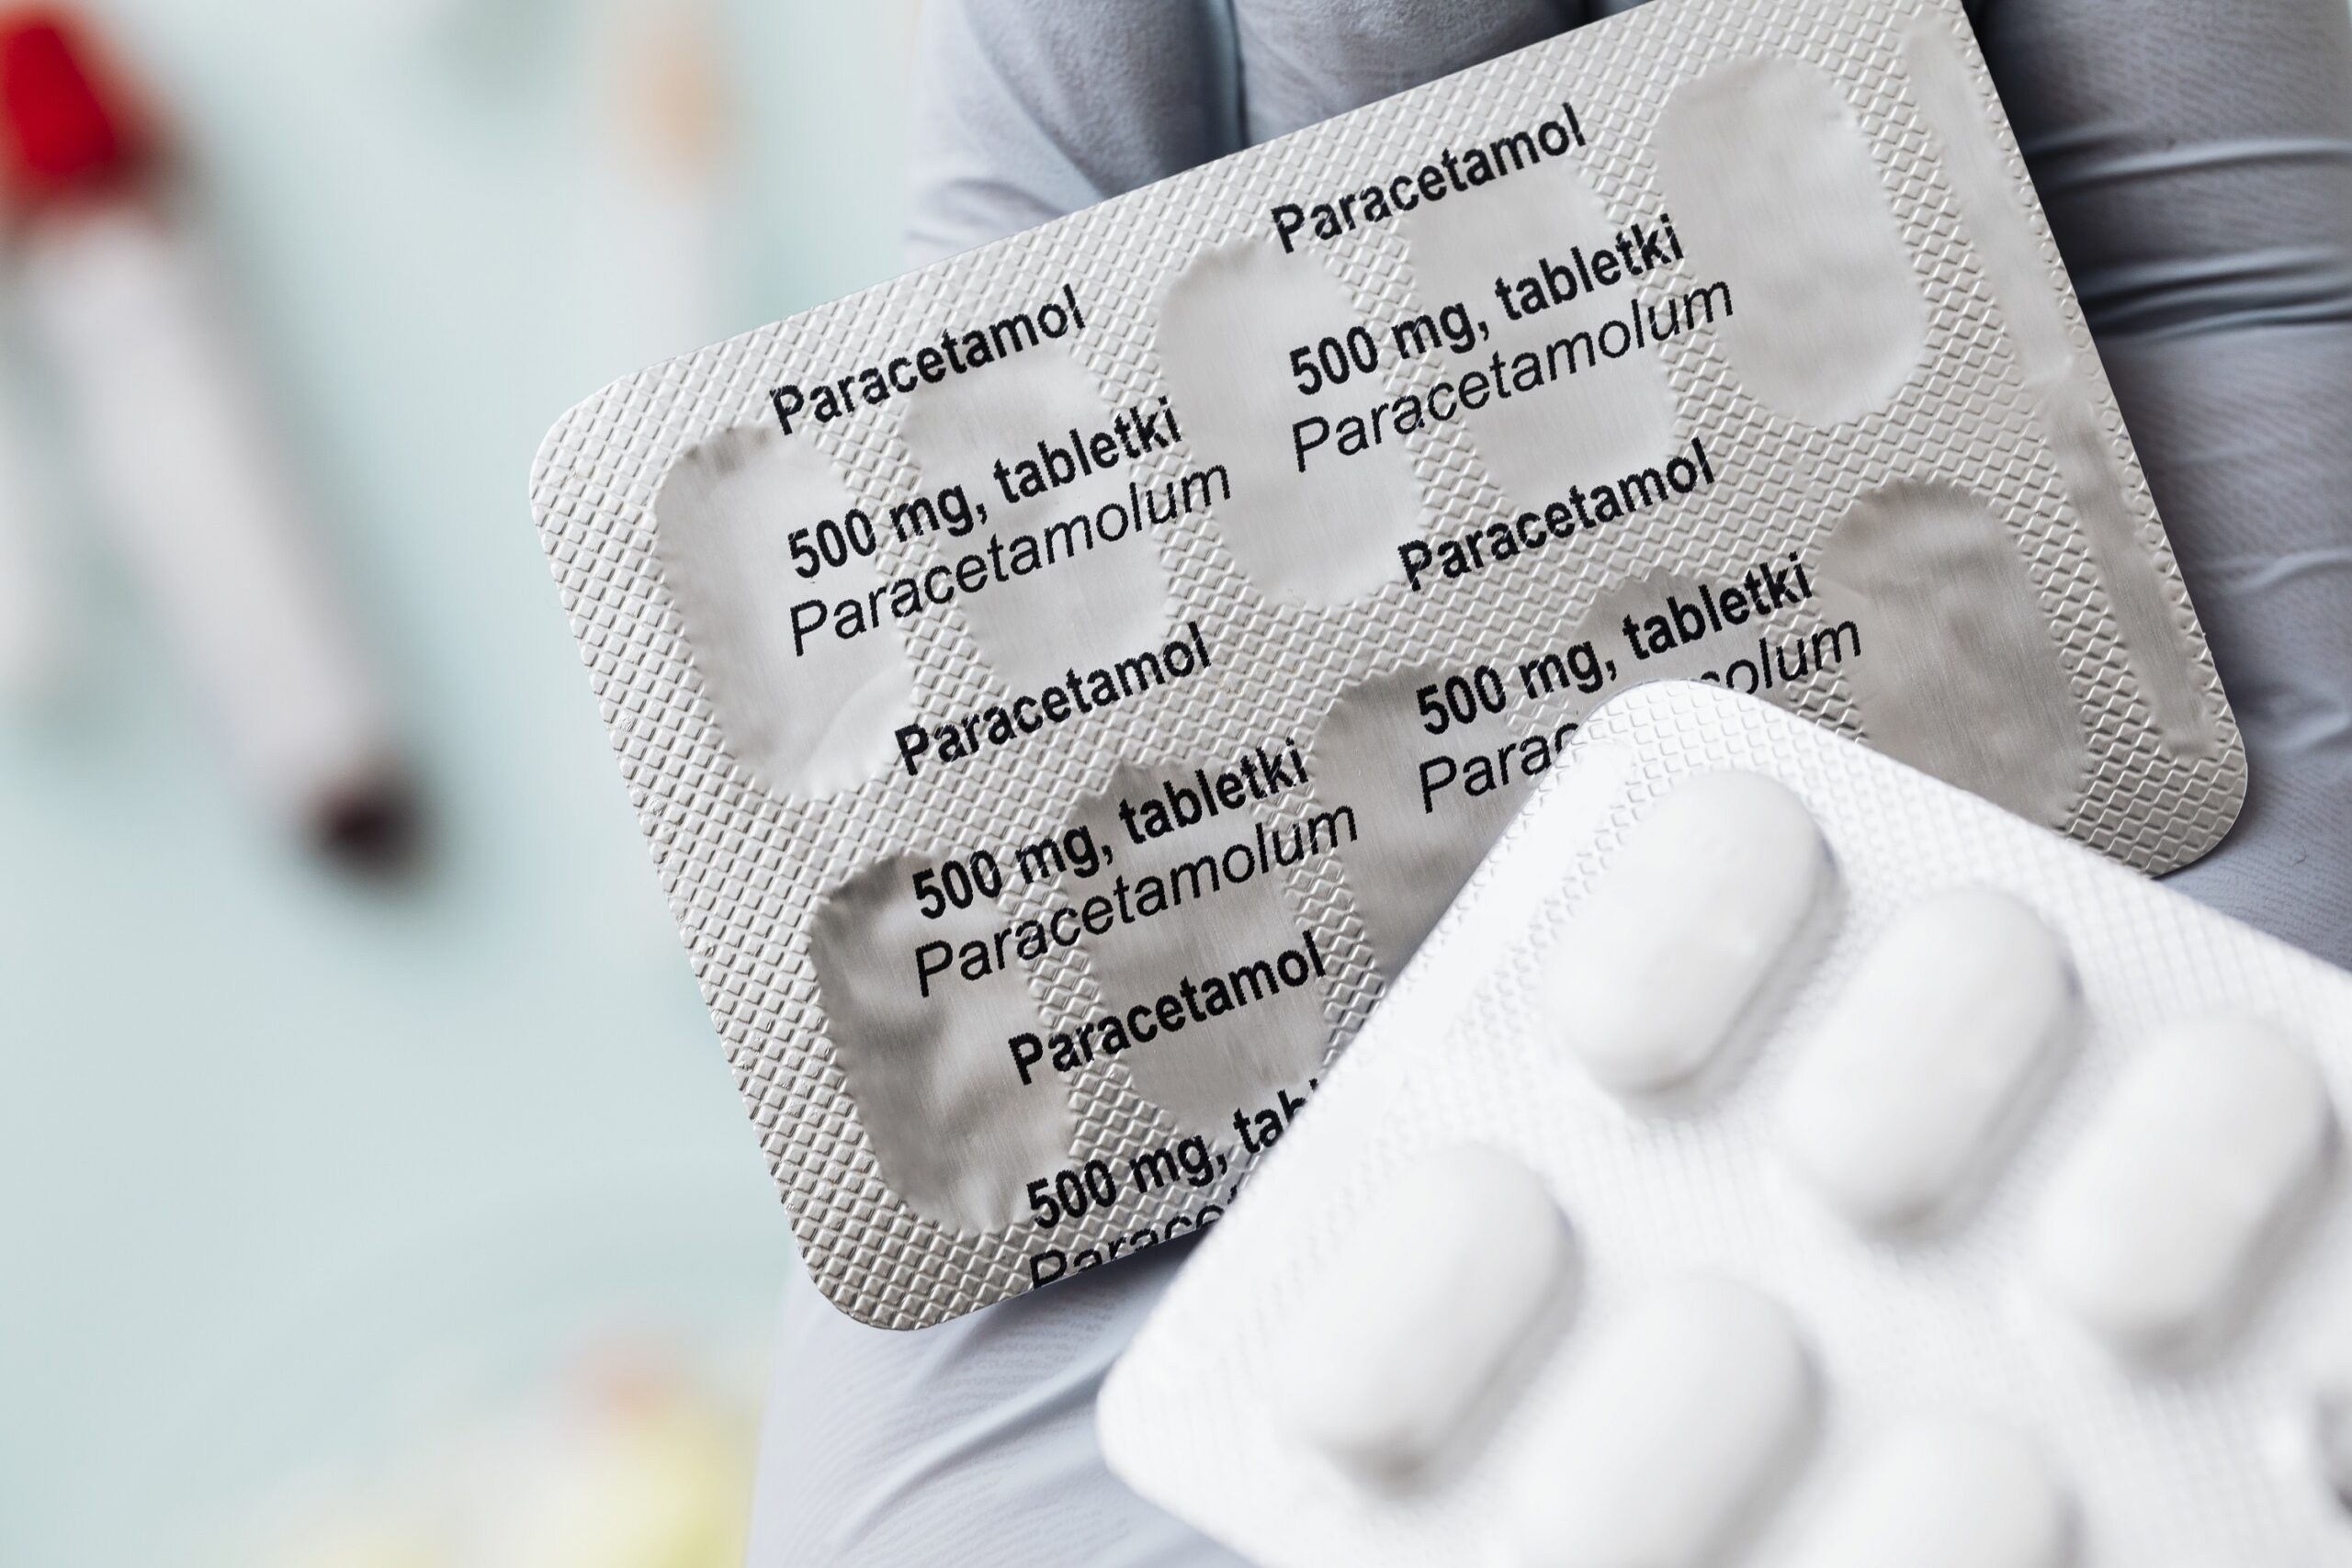 Falência do fígado e danos renais: entenda riscos do uso frequente do paracetamol